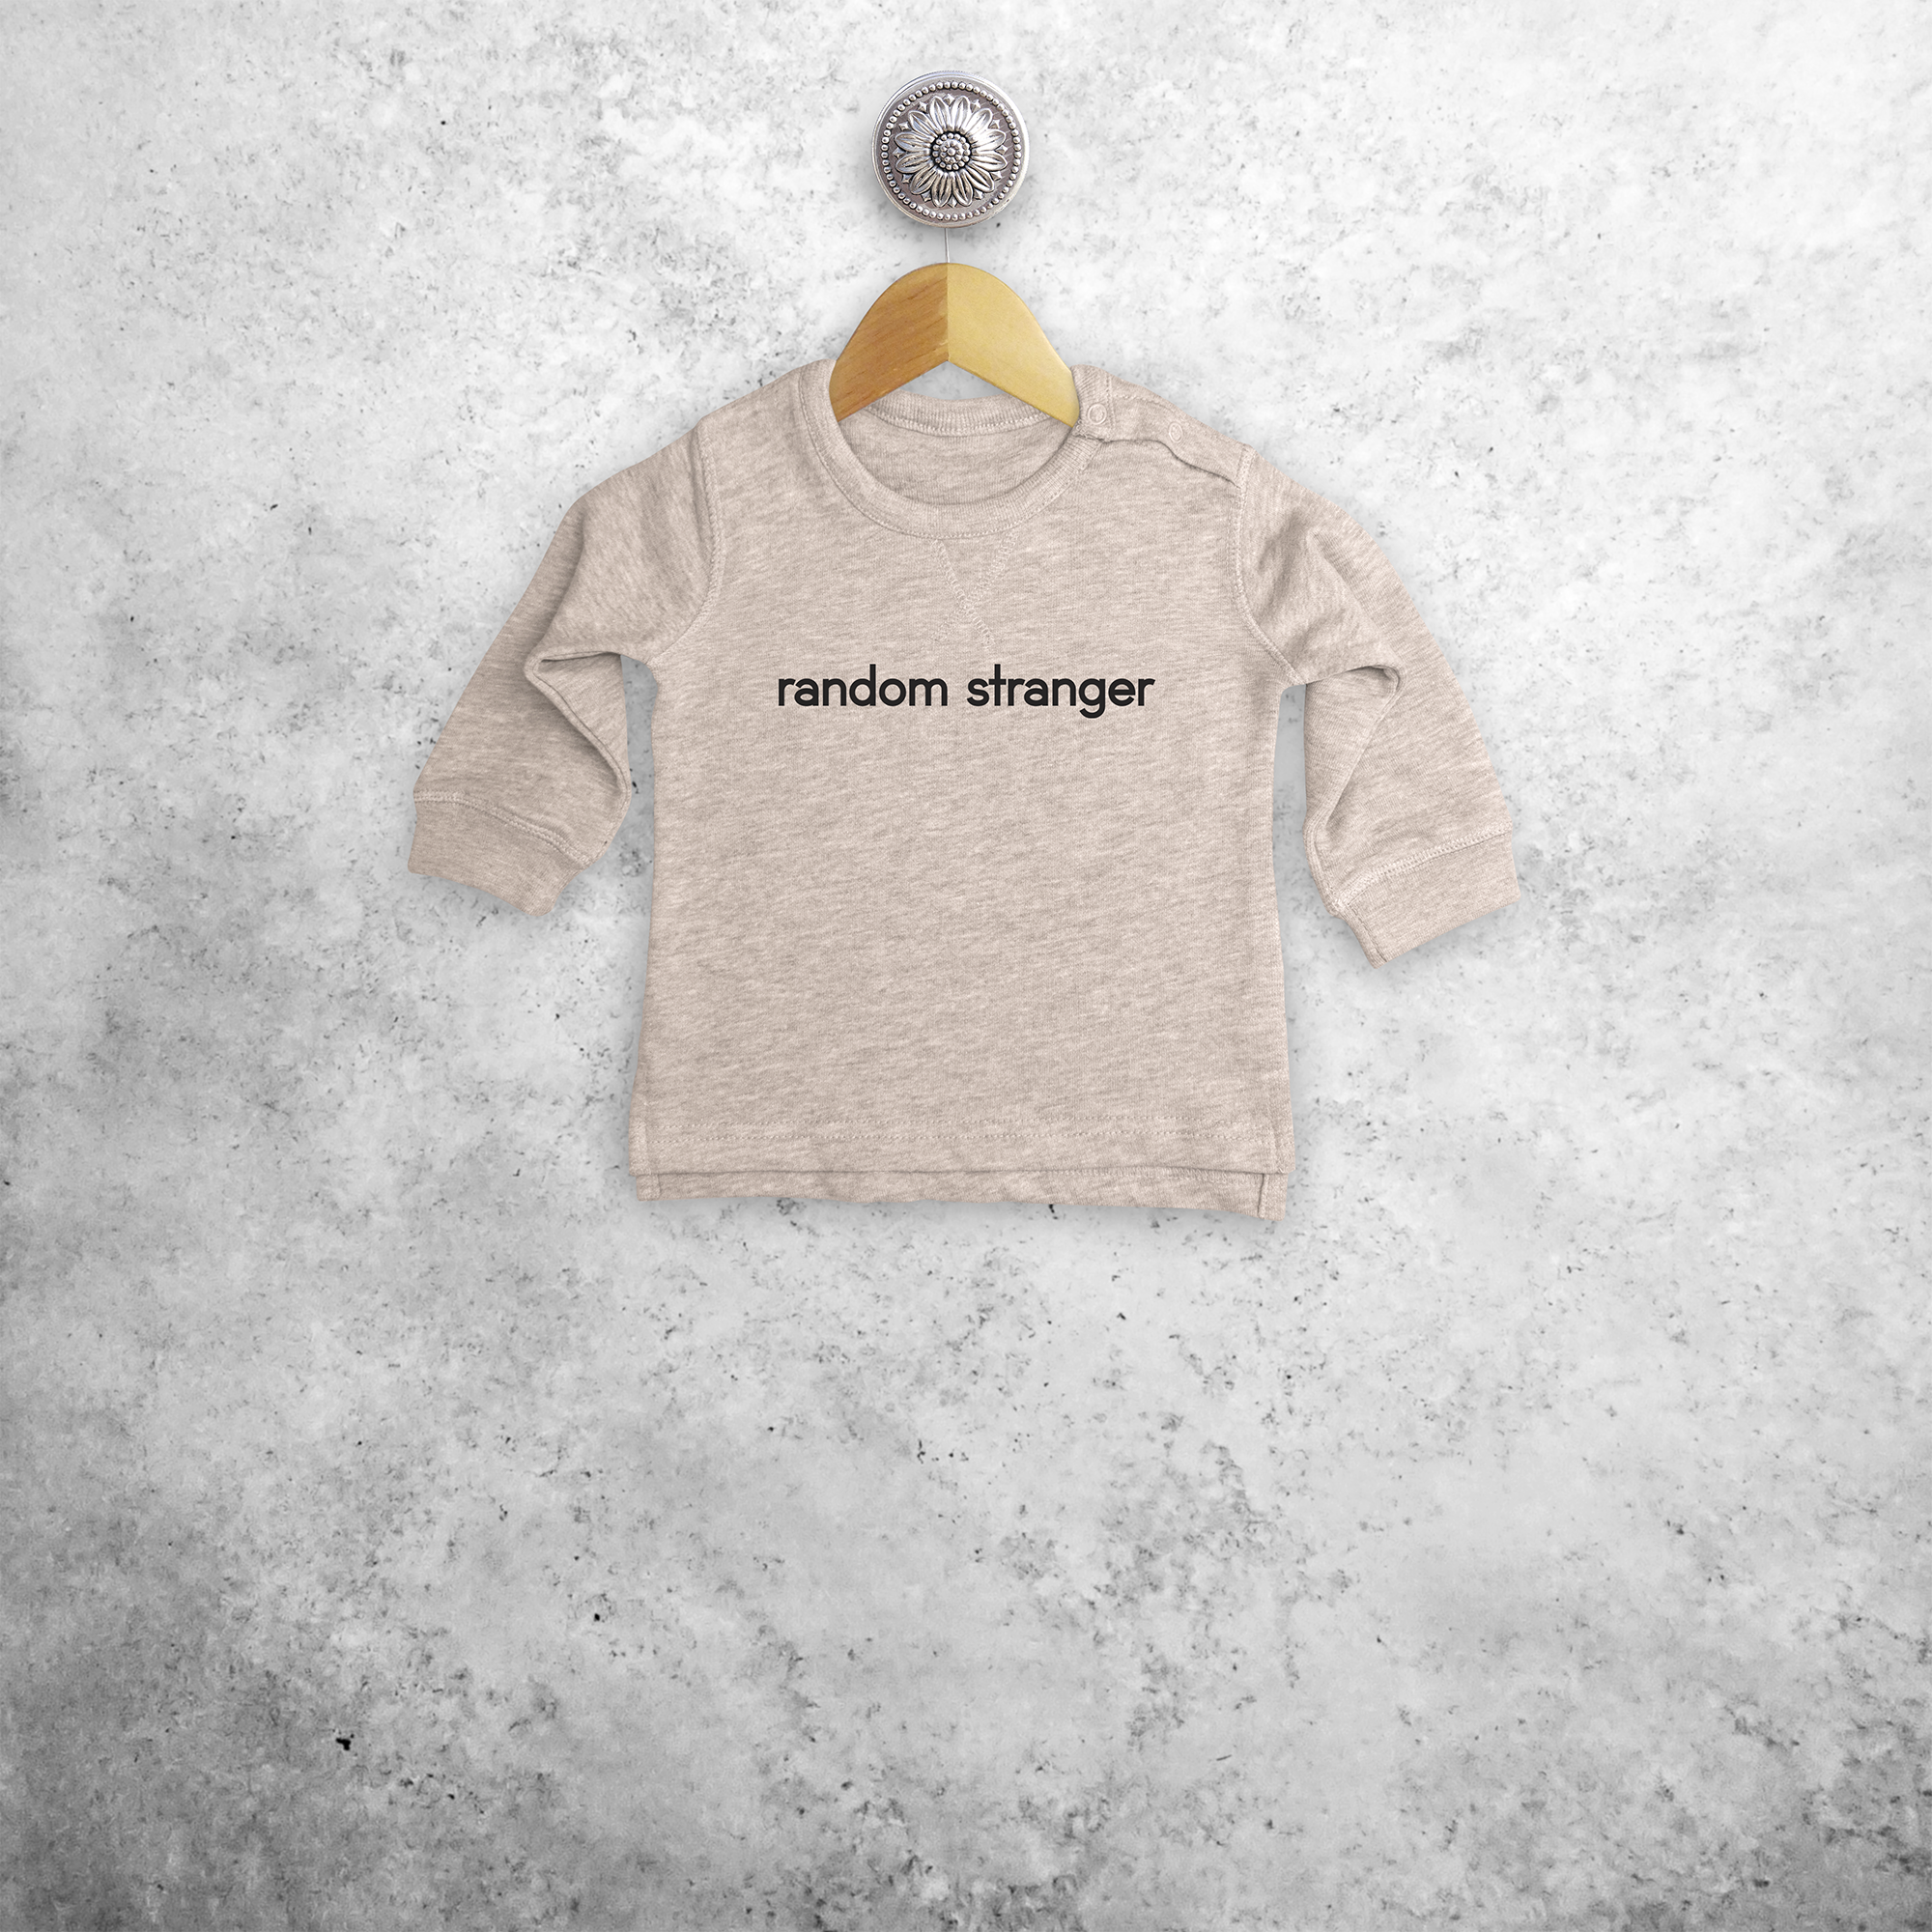 'Random stranger' baby sweater